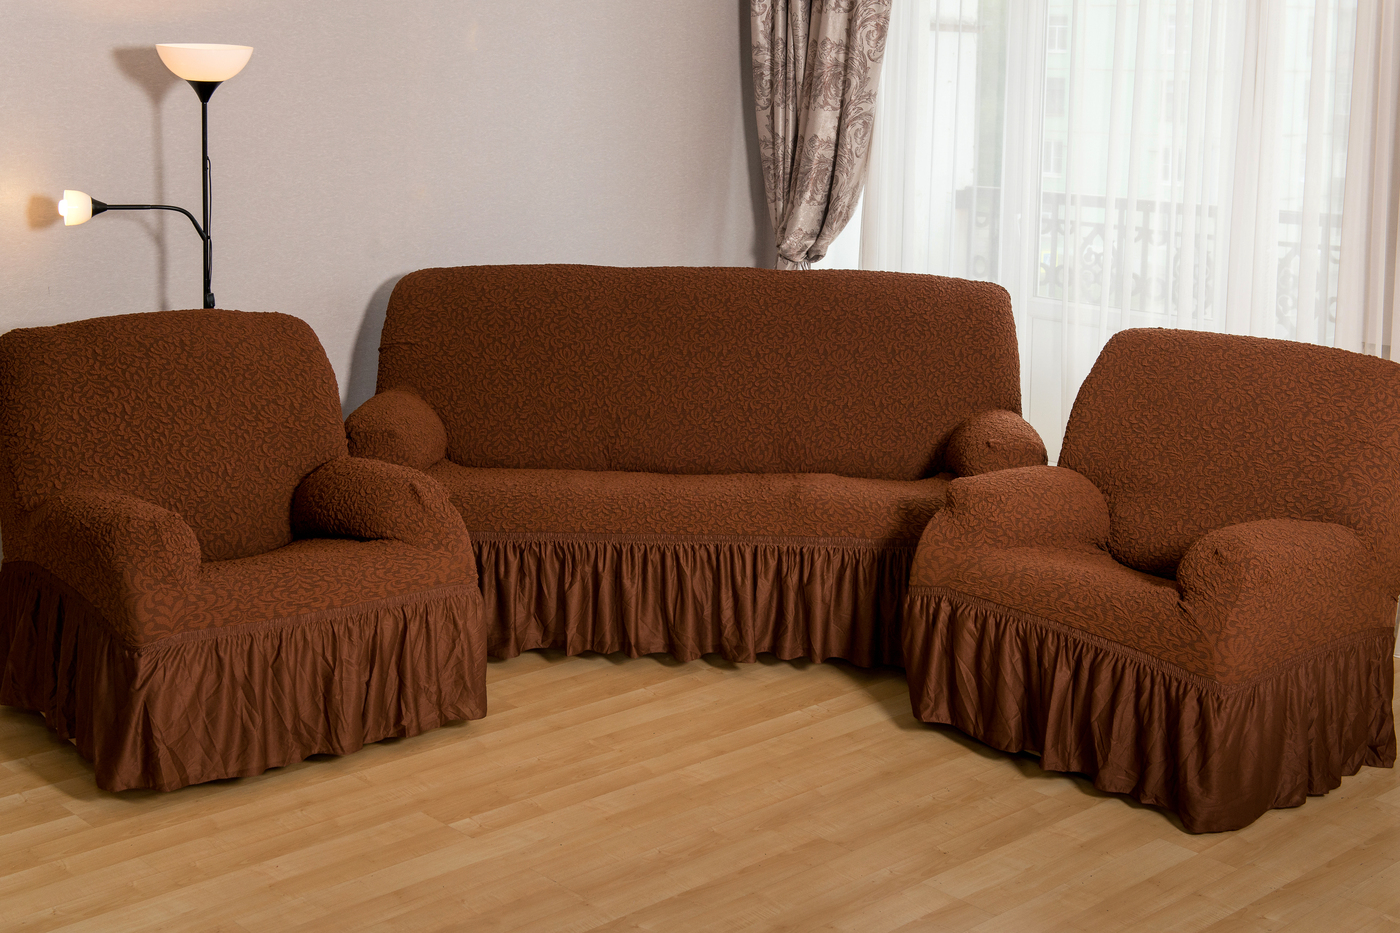 Комплект мебели диван и 2. Чехол на мебель для дивана Karbeltex. Картекс чехлы на диван и 2 кресла. Еврочехол на диван и кресла.